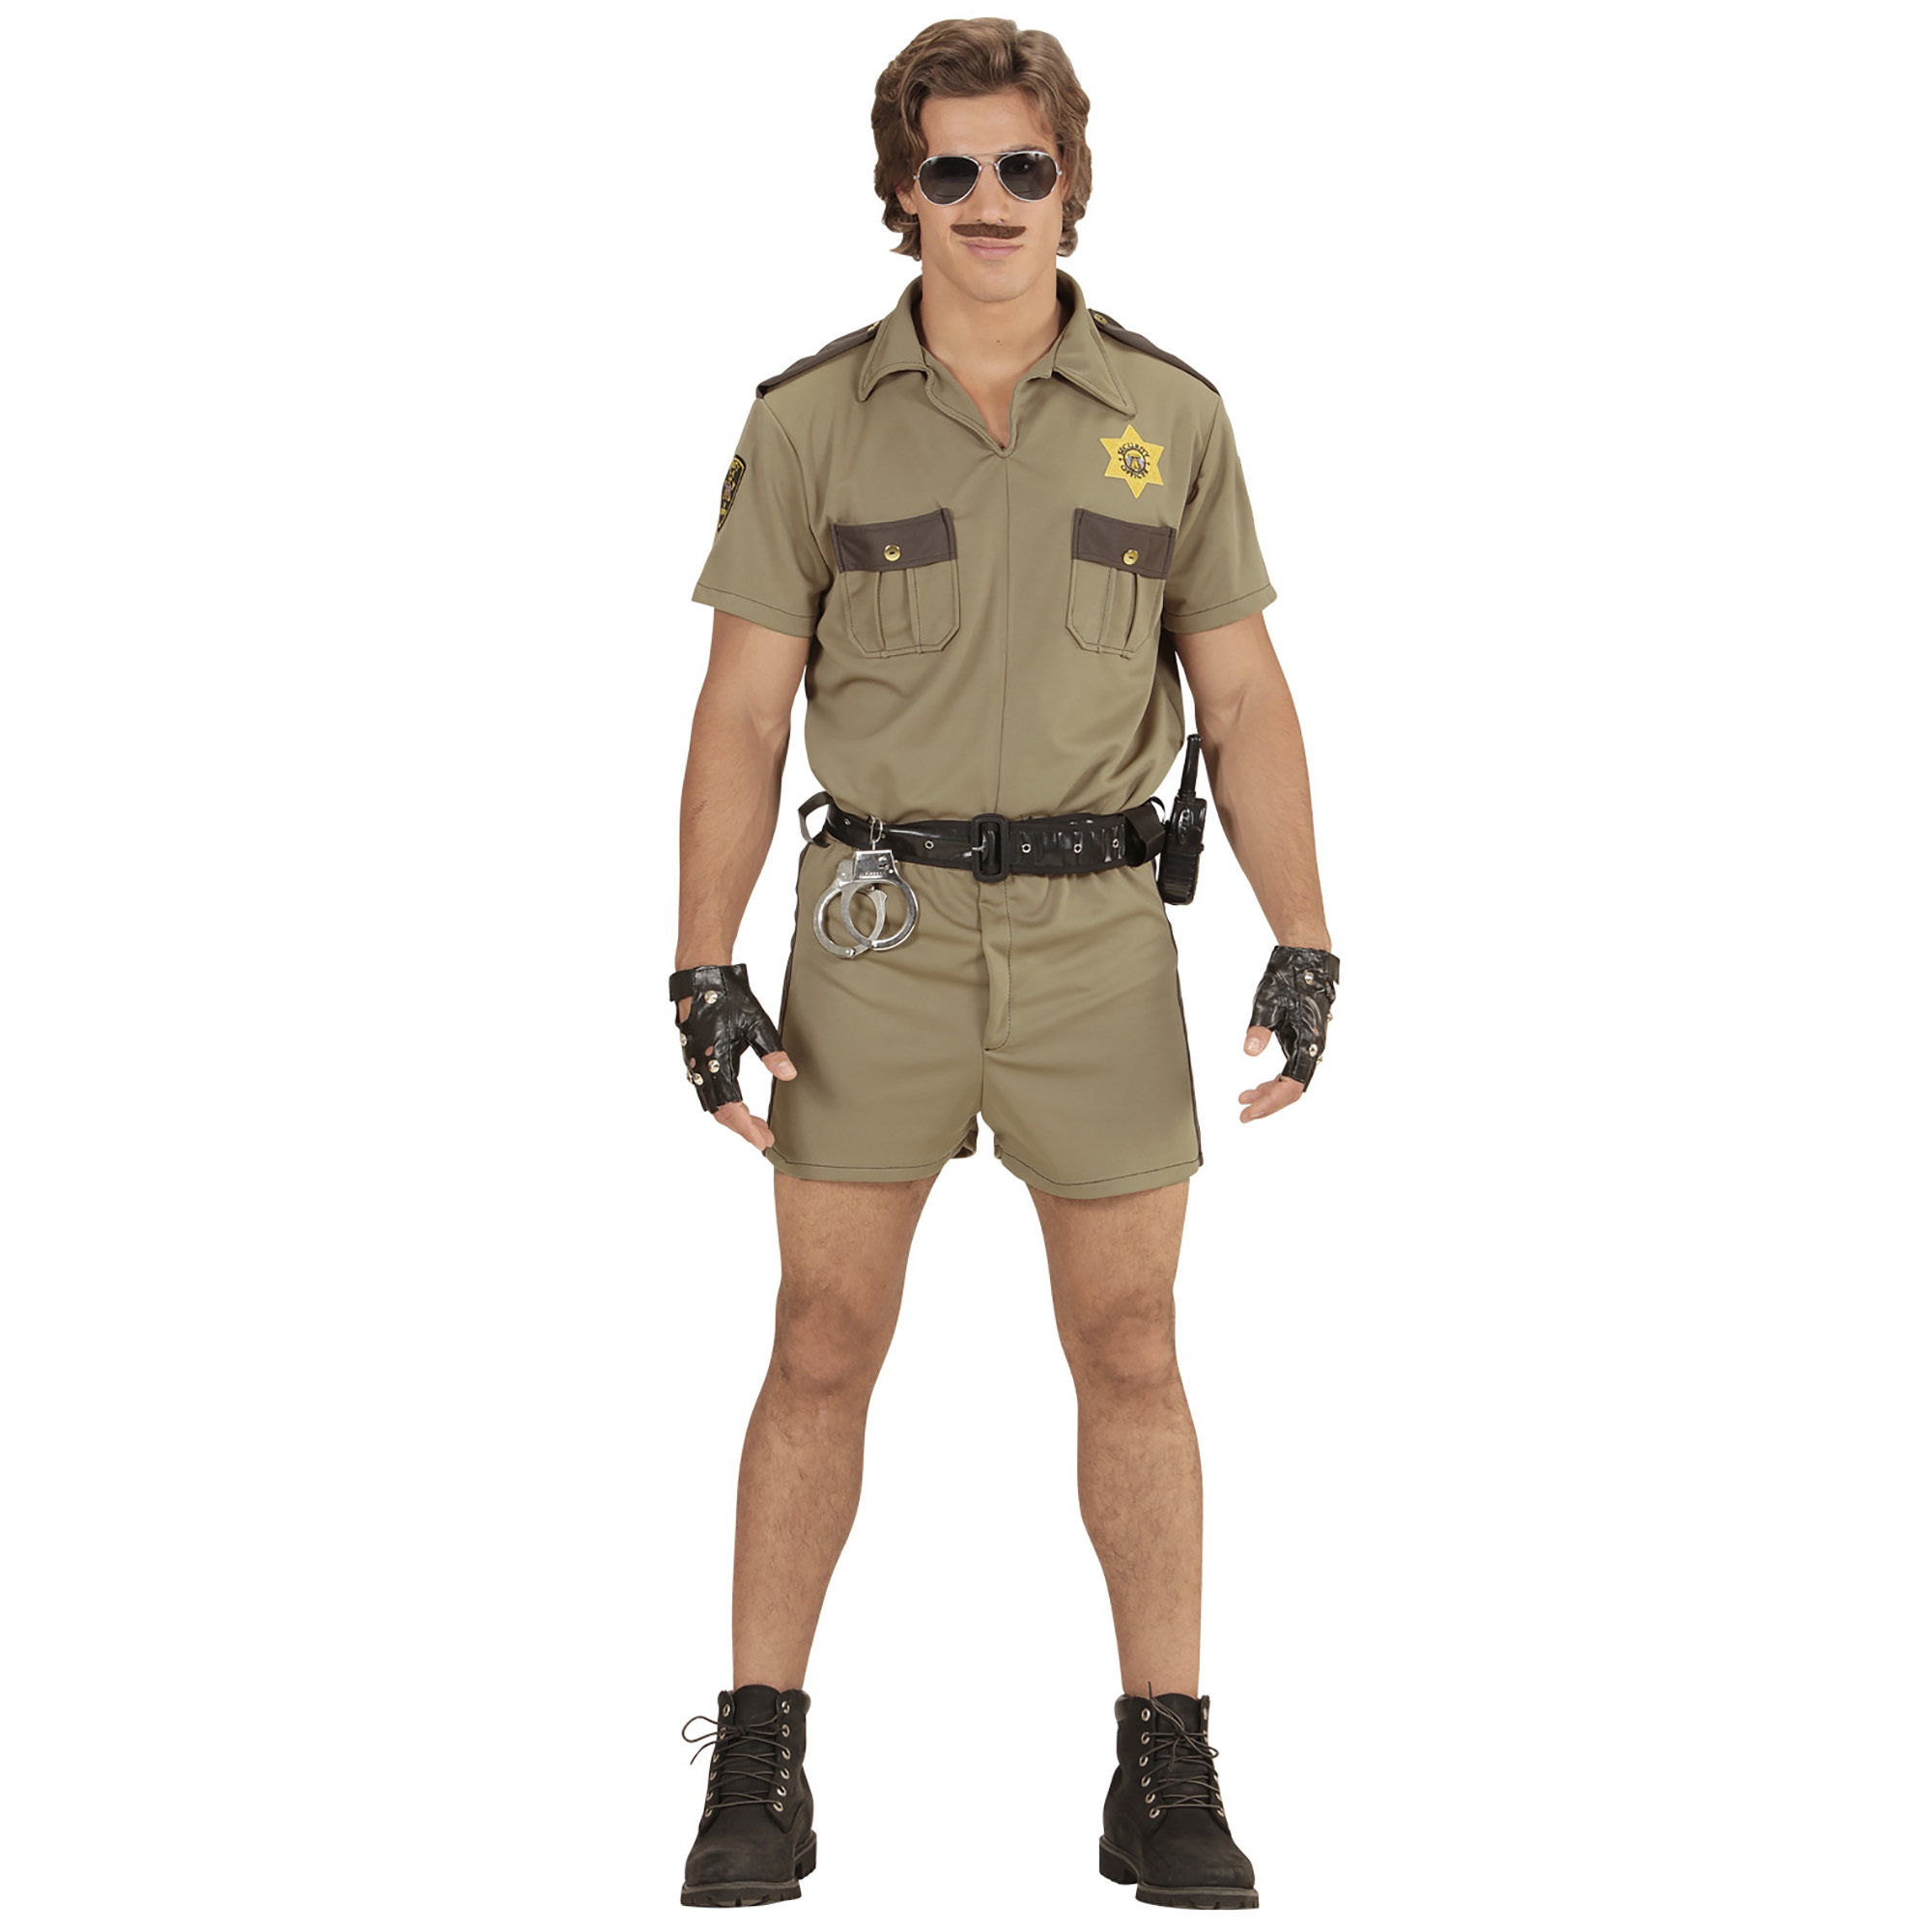 Calafornia highway patrol agent kostuum 